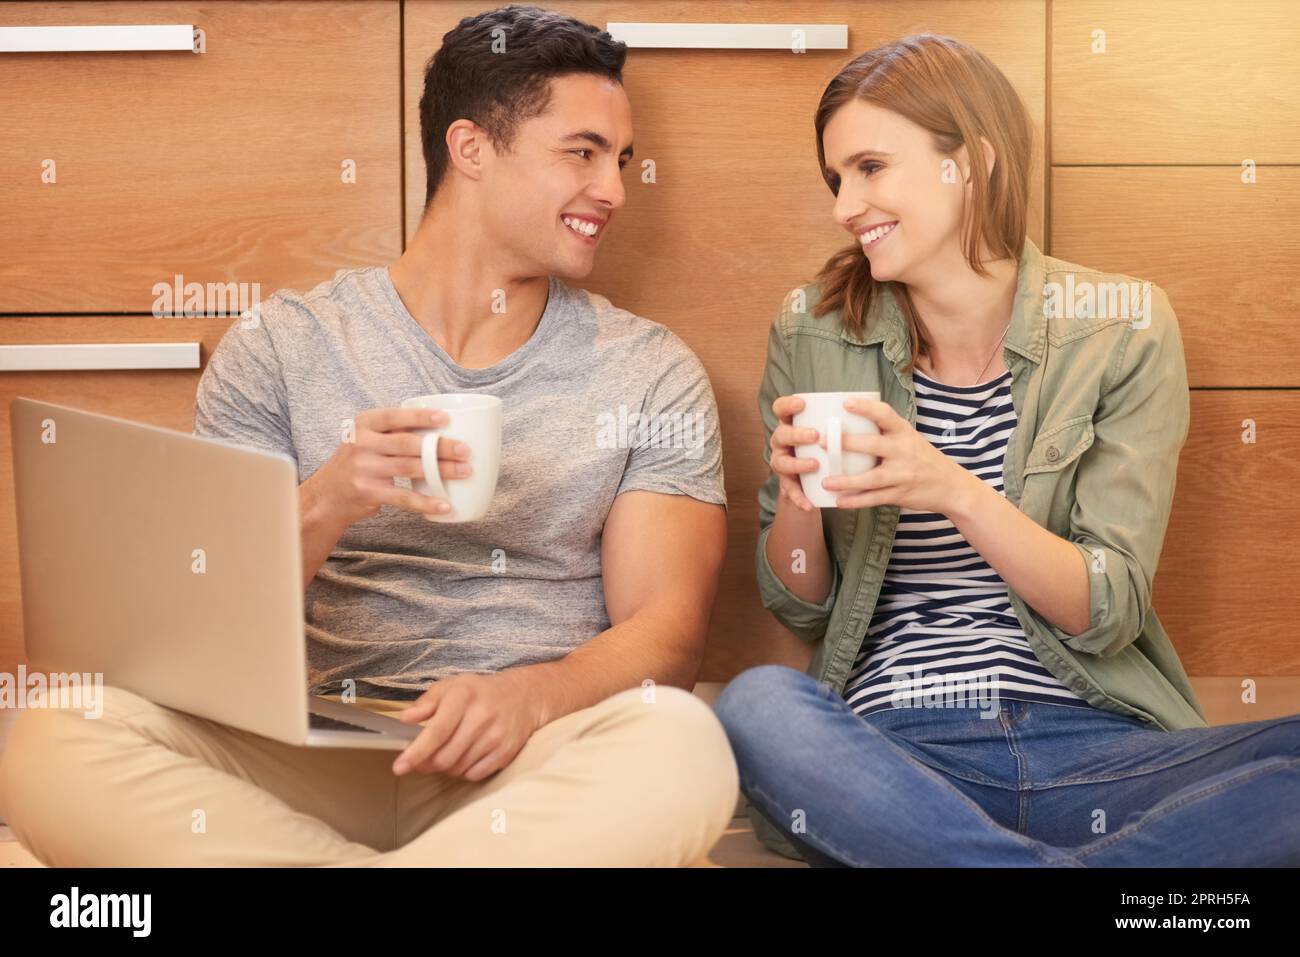 È il momento di una pausa caffè. Una giovane coppia felice beve caffè e usa un computer portatile mentre si siede sul pavimento della cucina. Foto Stock